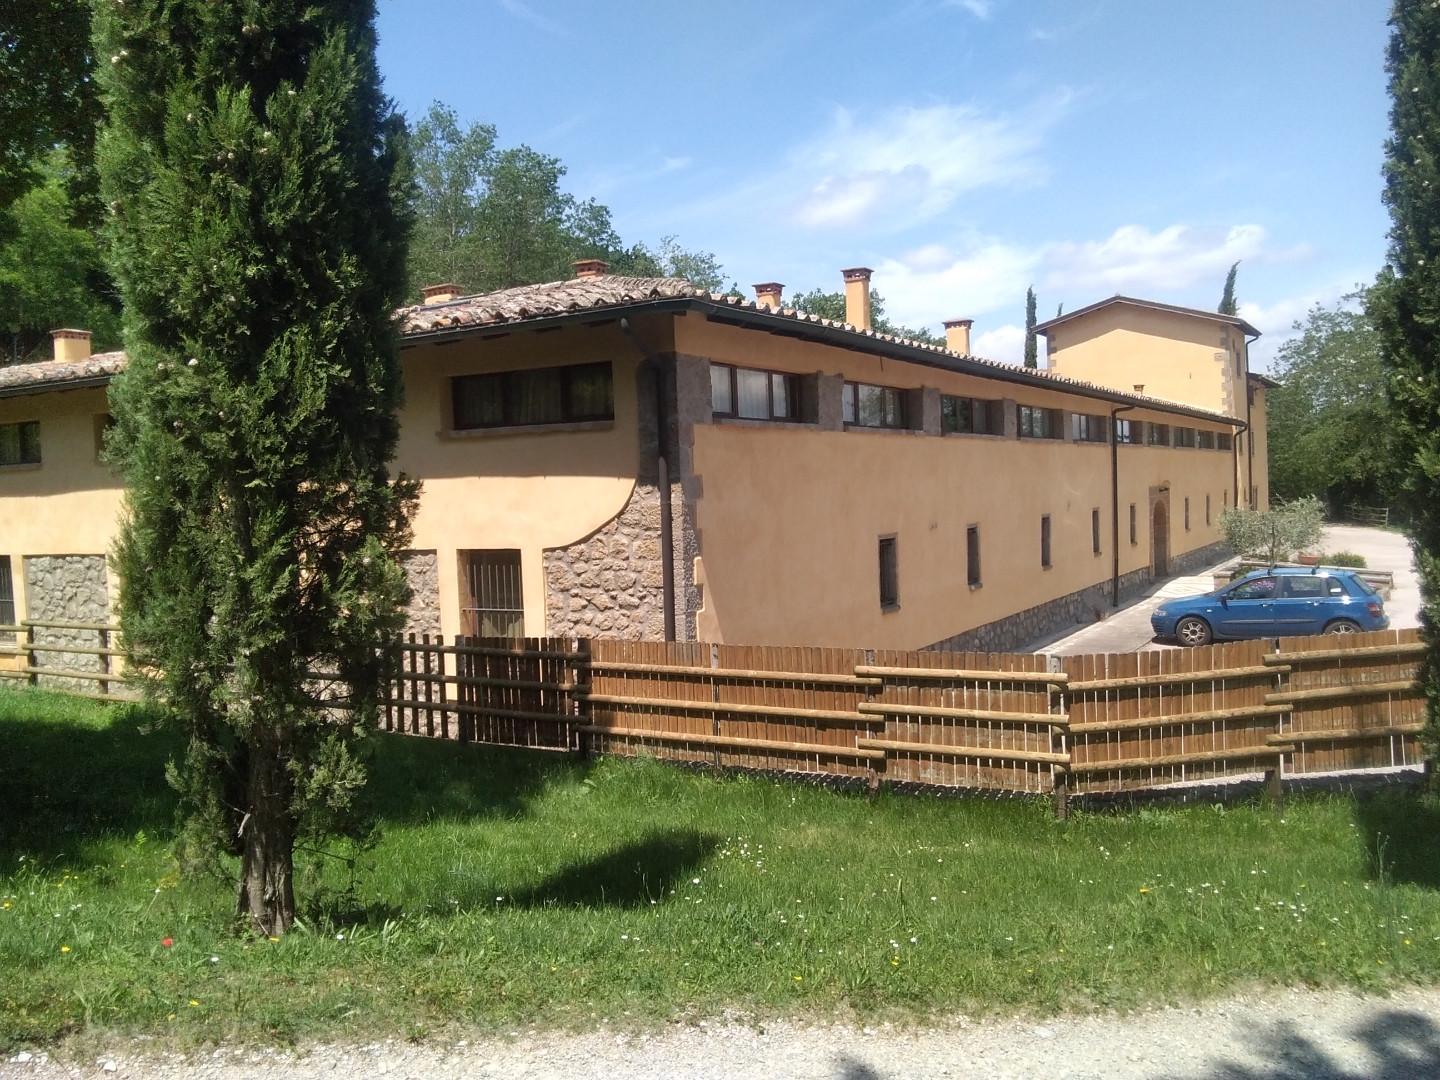 Apartment for sale in Castel del Piano (GR)